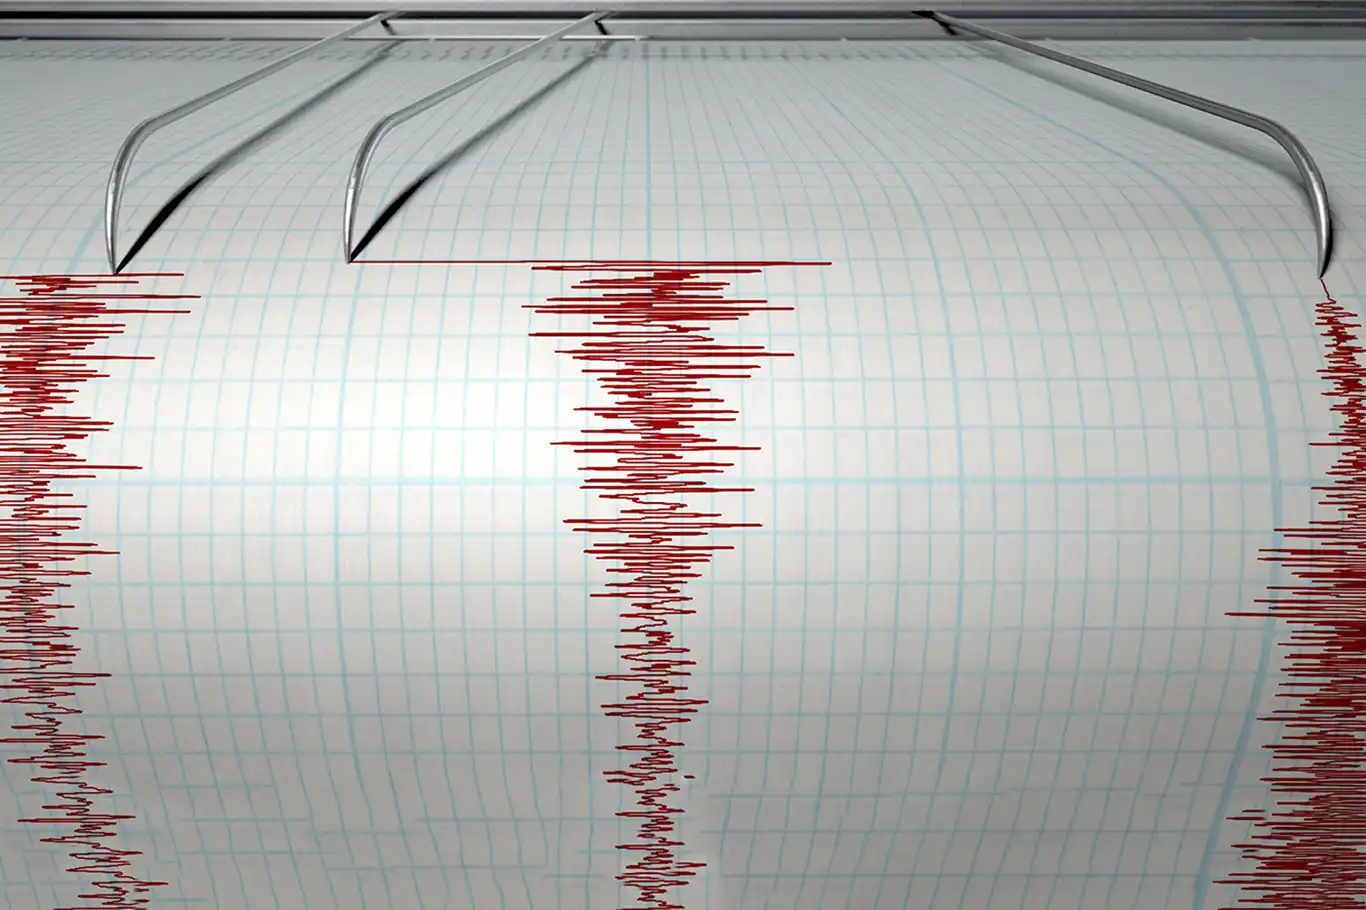 4.5 magnitude earthquake strikes Aegean Sea Off Turkish coast